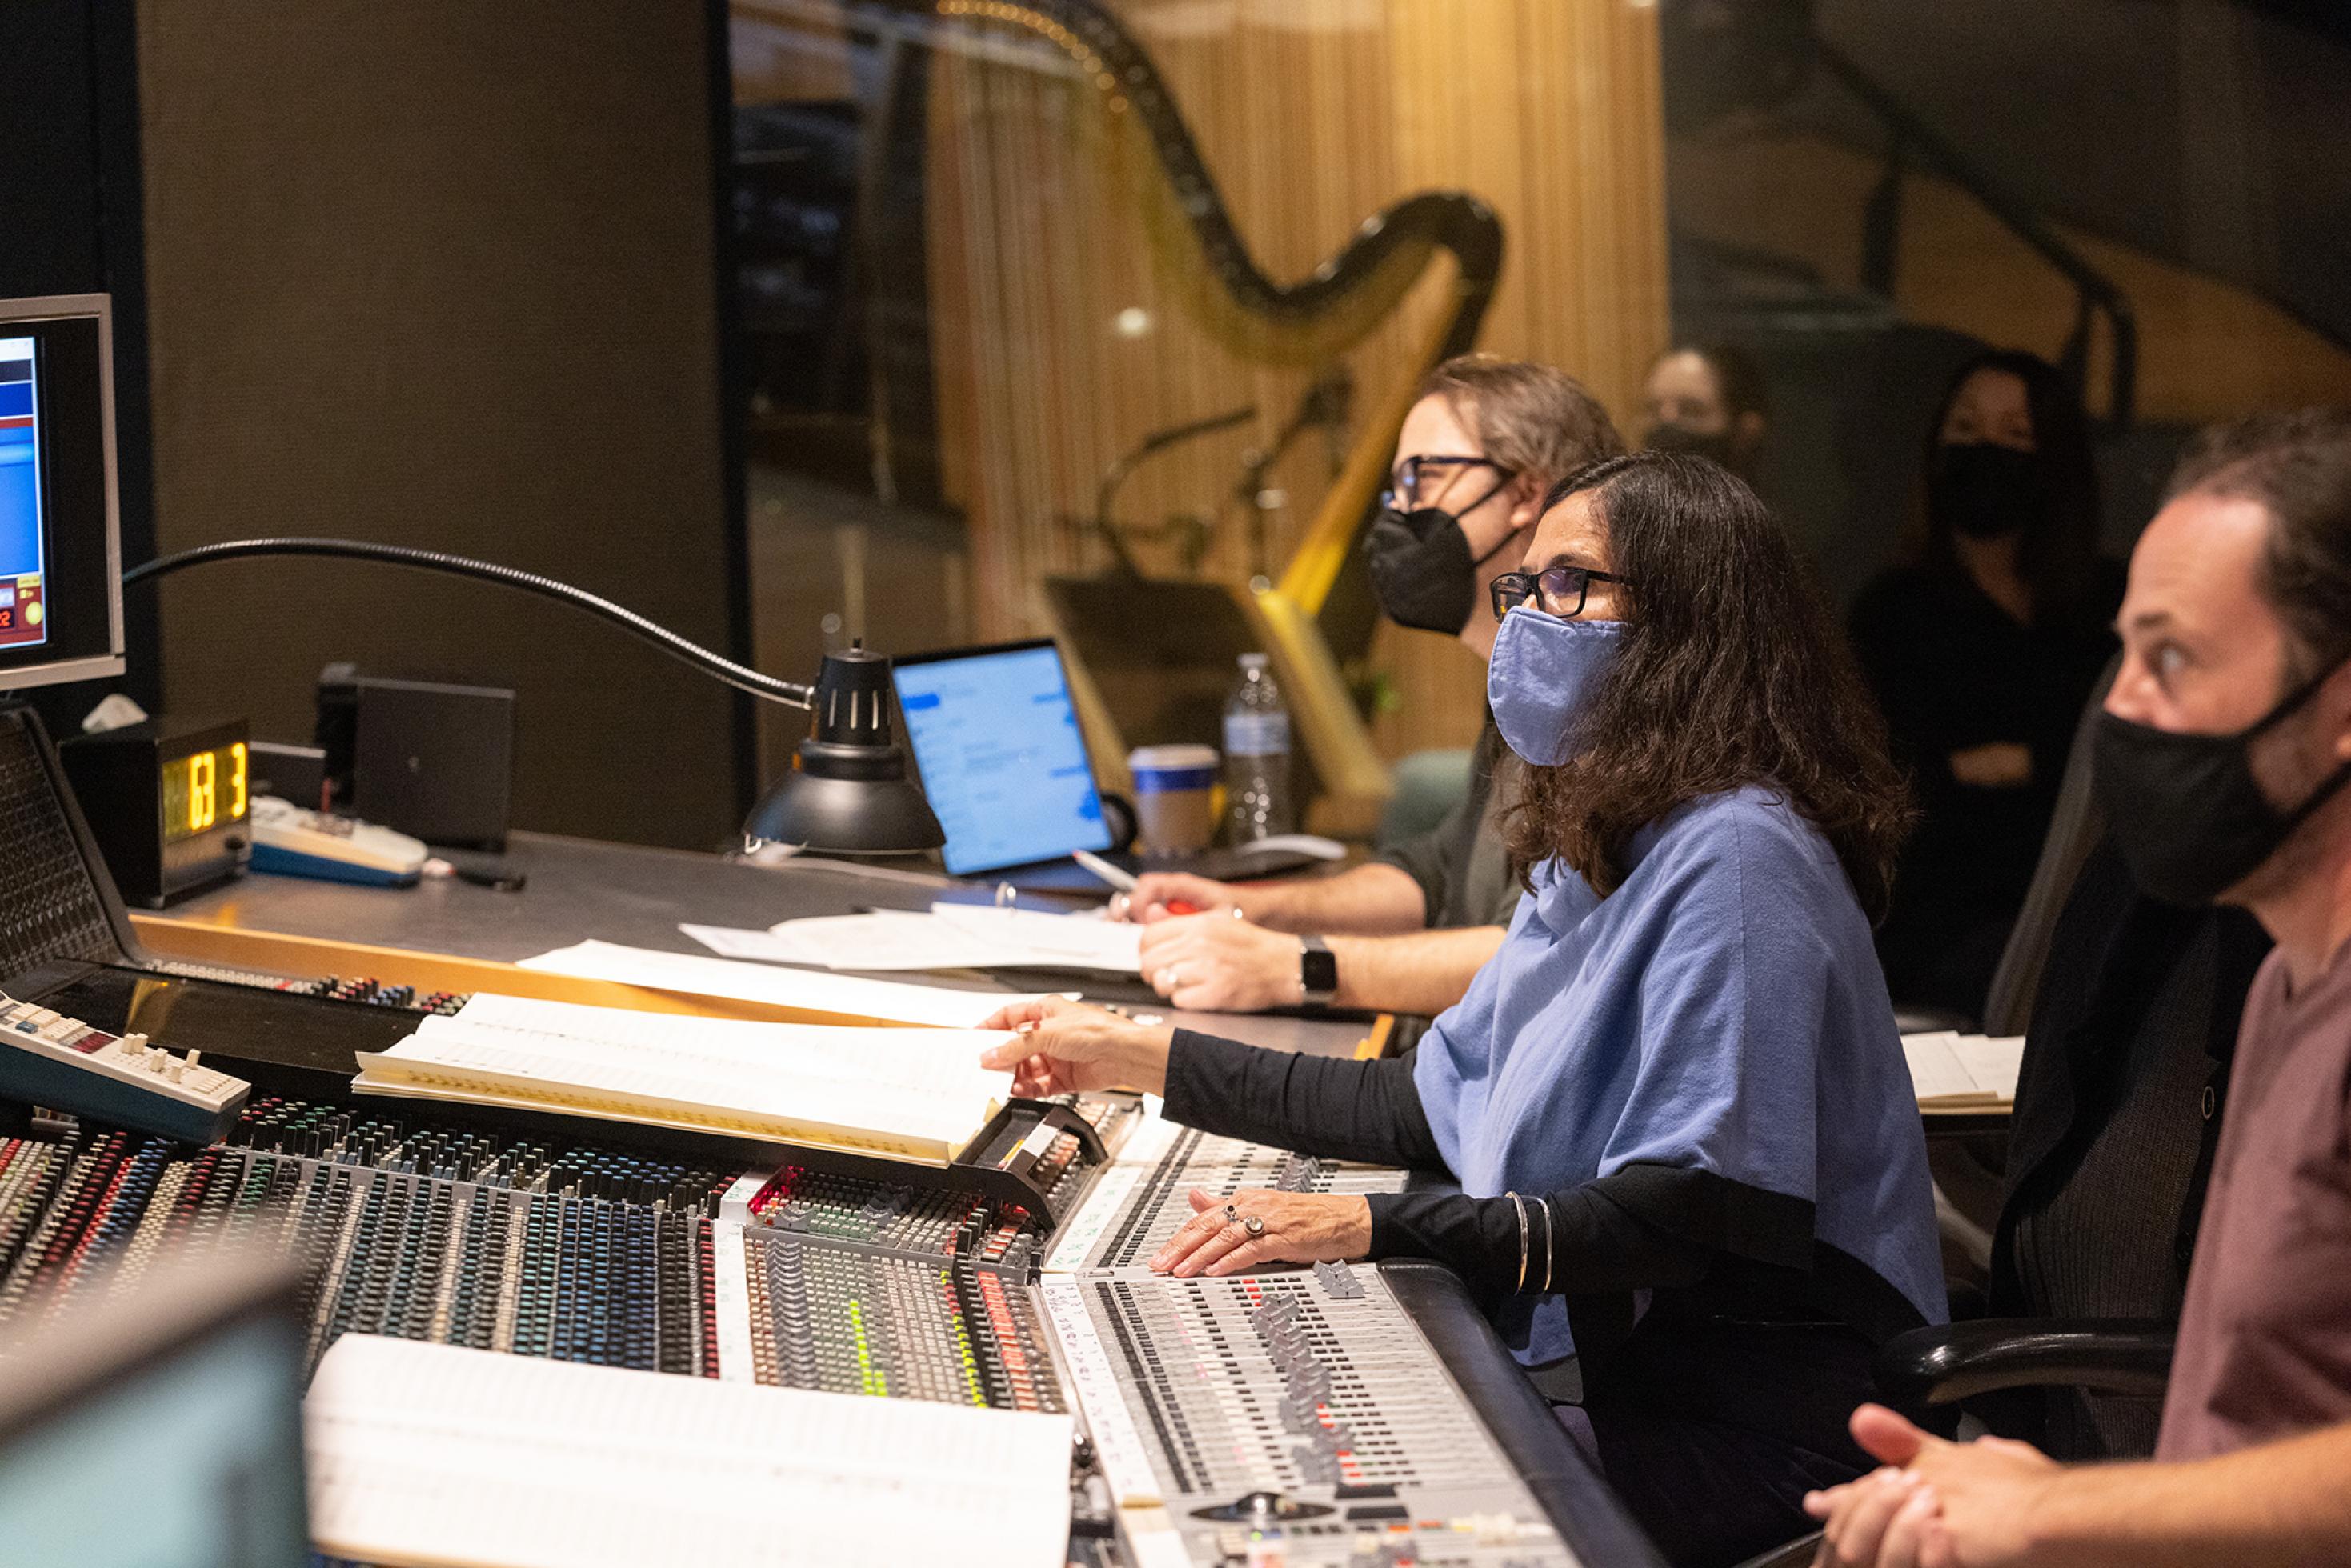 Komponistin Germaine Franco trägt bei der Arbeit im Disney Tonstudio wegen der Pandemie eine blaue Stoffmaske. An den Reglern und mit den Noten vor sich schaut sie konzentriert zu den Musikern, die nicht im Bild sind.